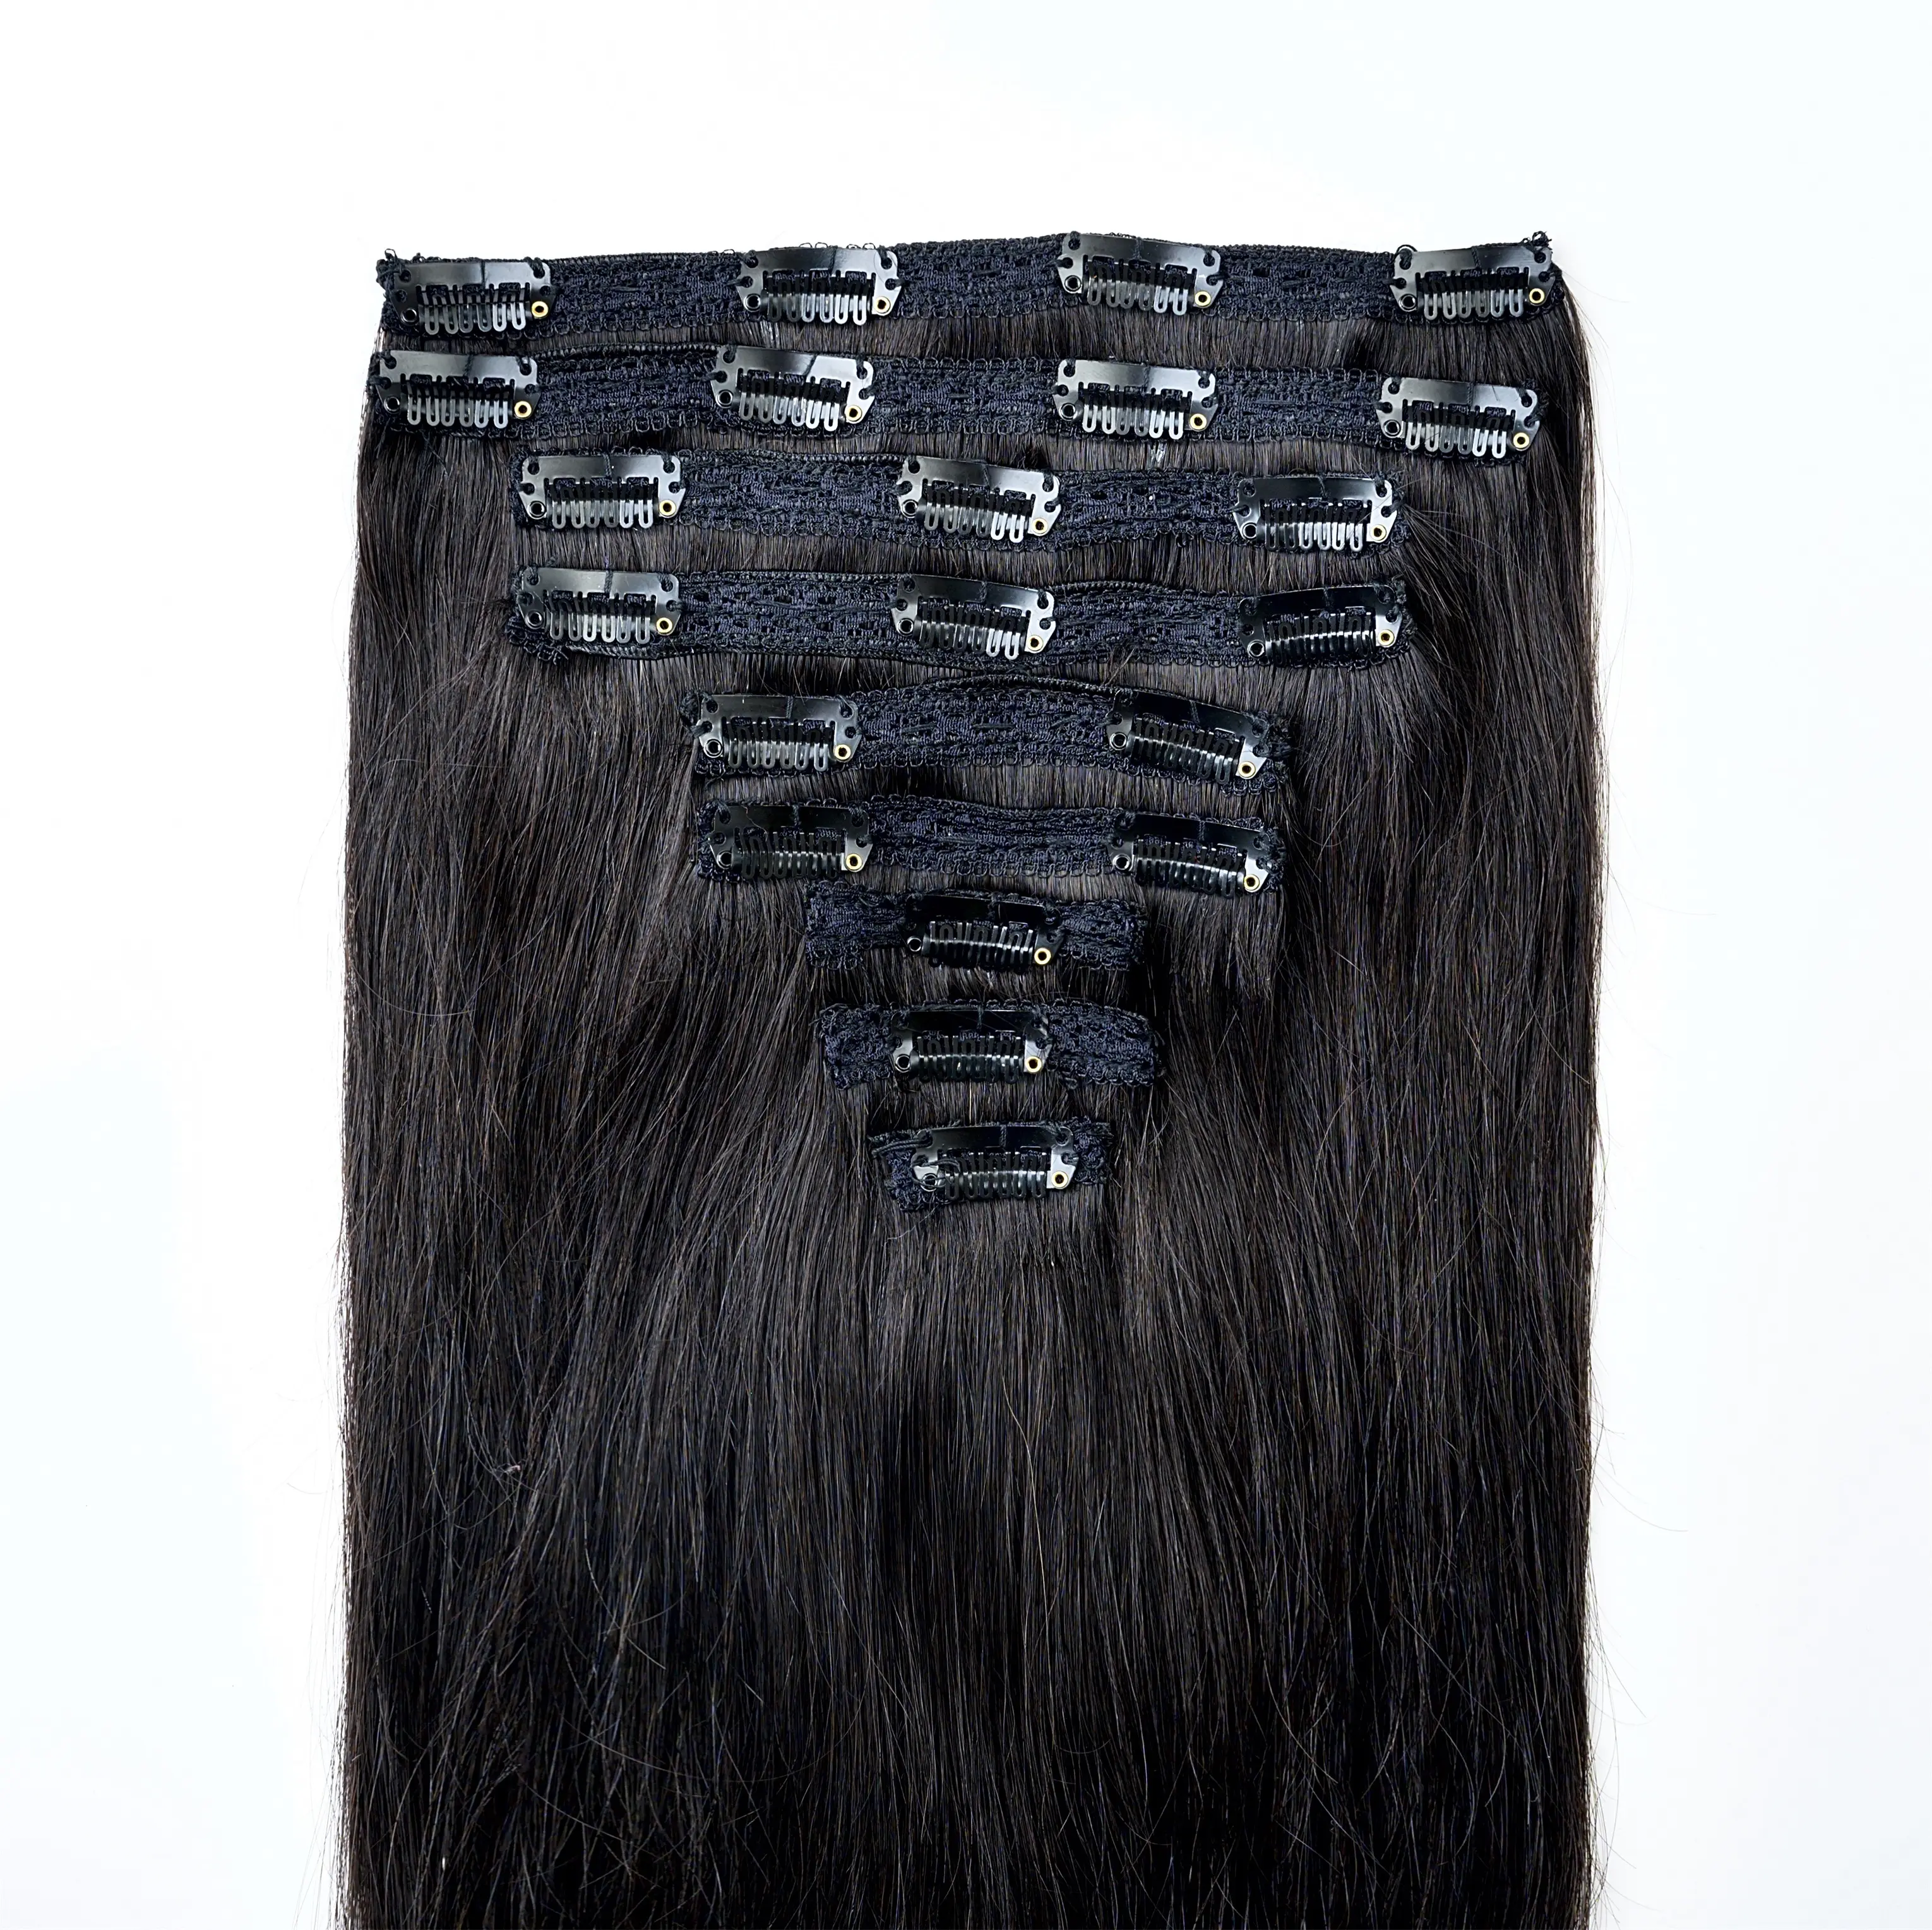 Высококачественные пряди 100% из камбоджских волос, 18 дюймов, 9 шт.